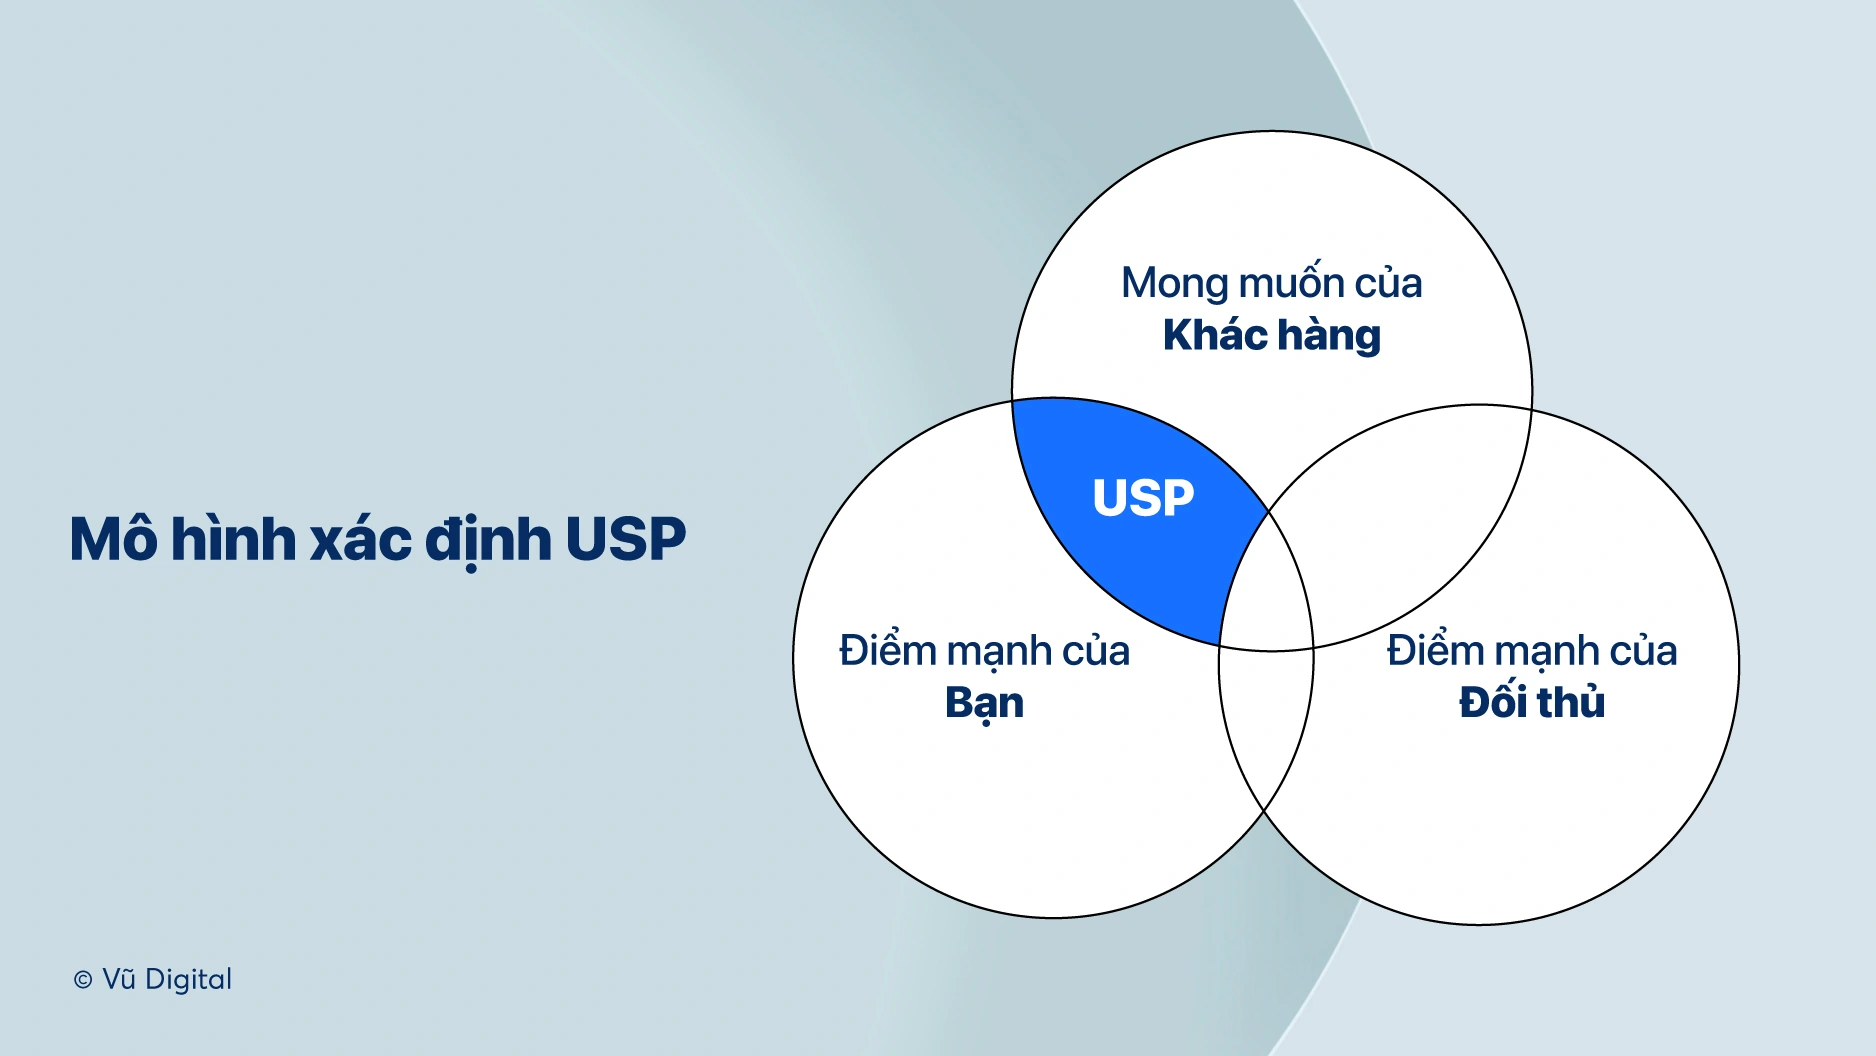 USP là gì